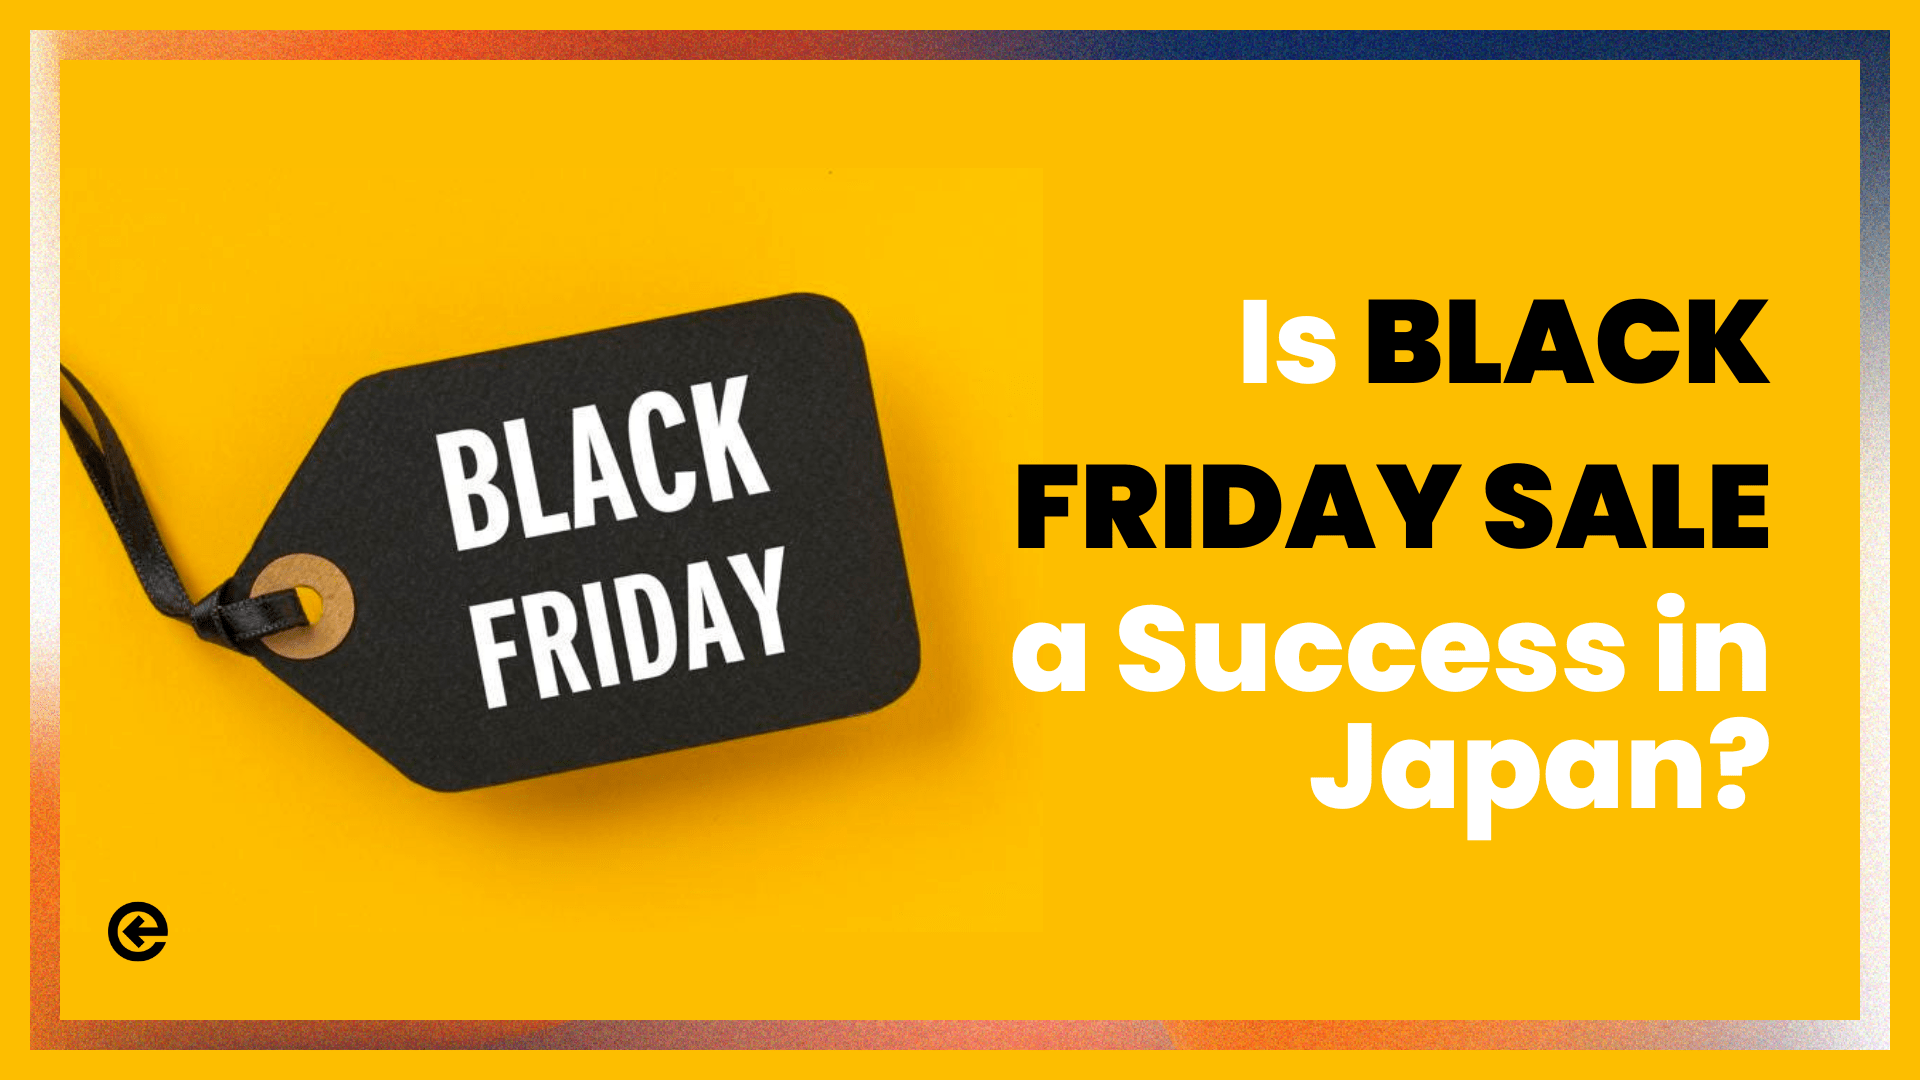 Black Friday in Japan